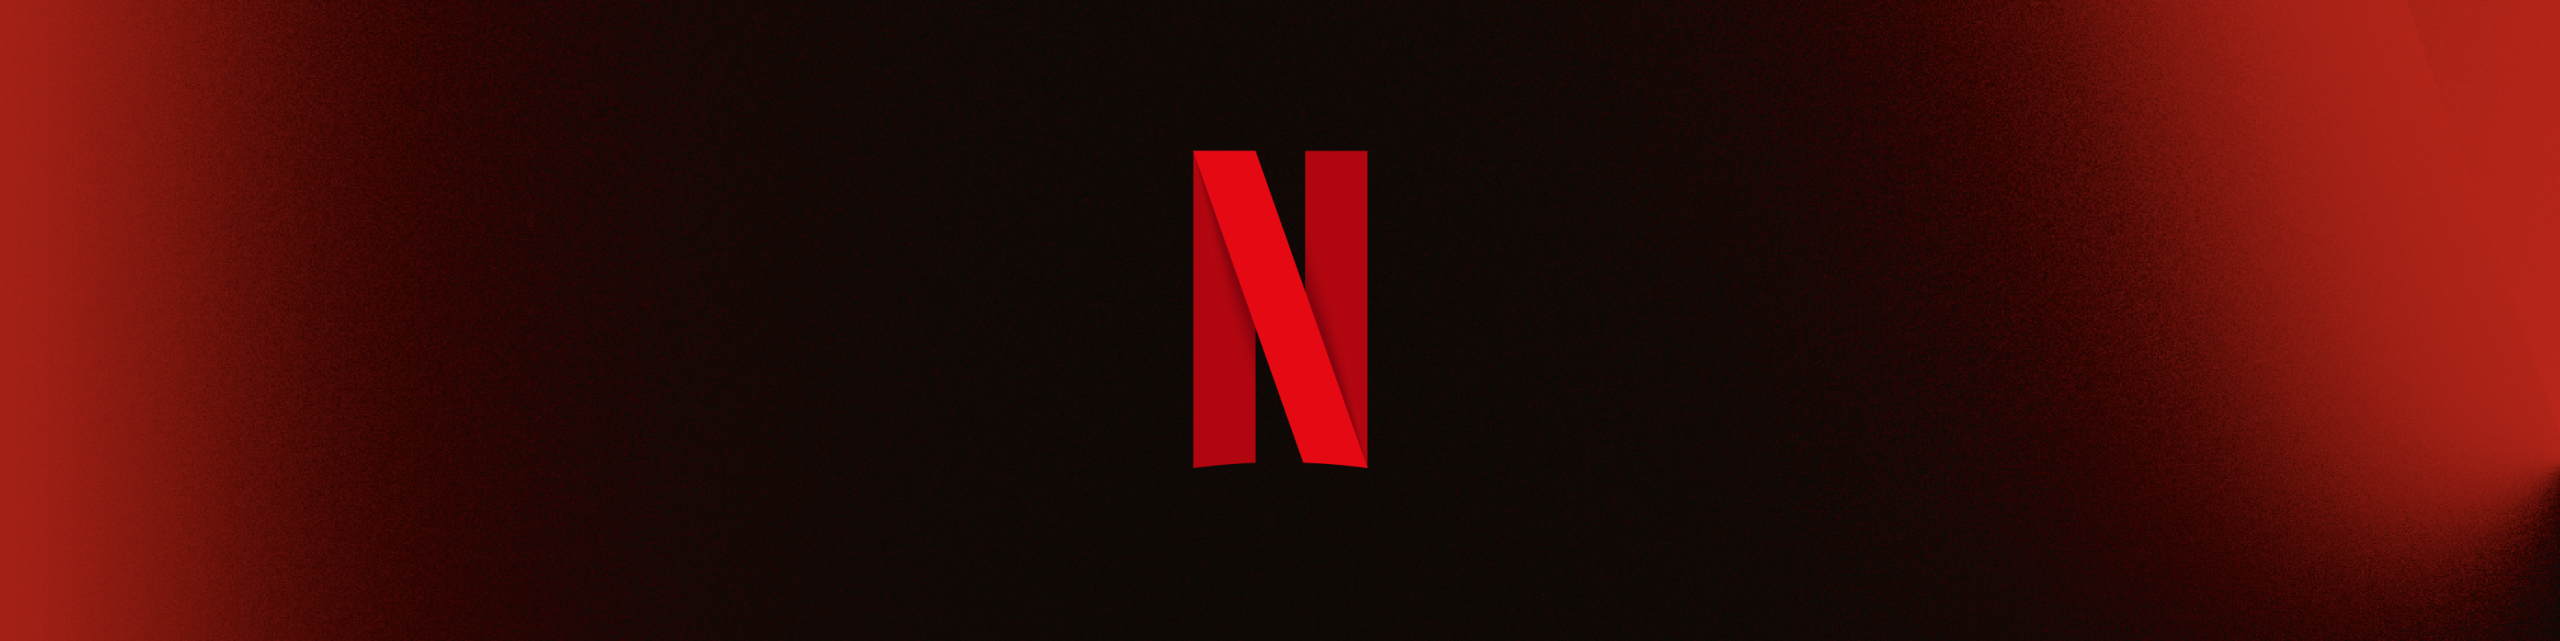 Ted Sarandos y Greg Peters ahora son co-CEO de Netflix, con Reed Hastings como presidente ejecutivo